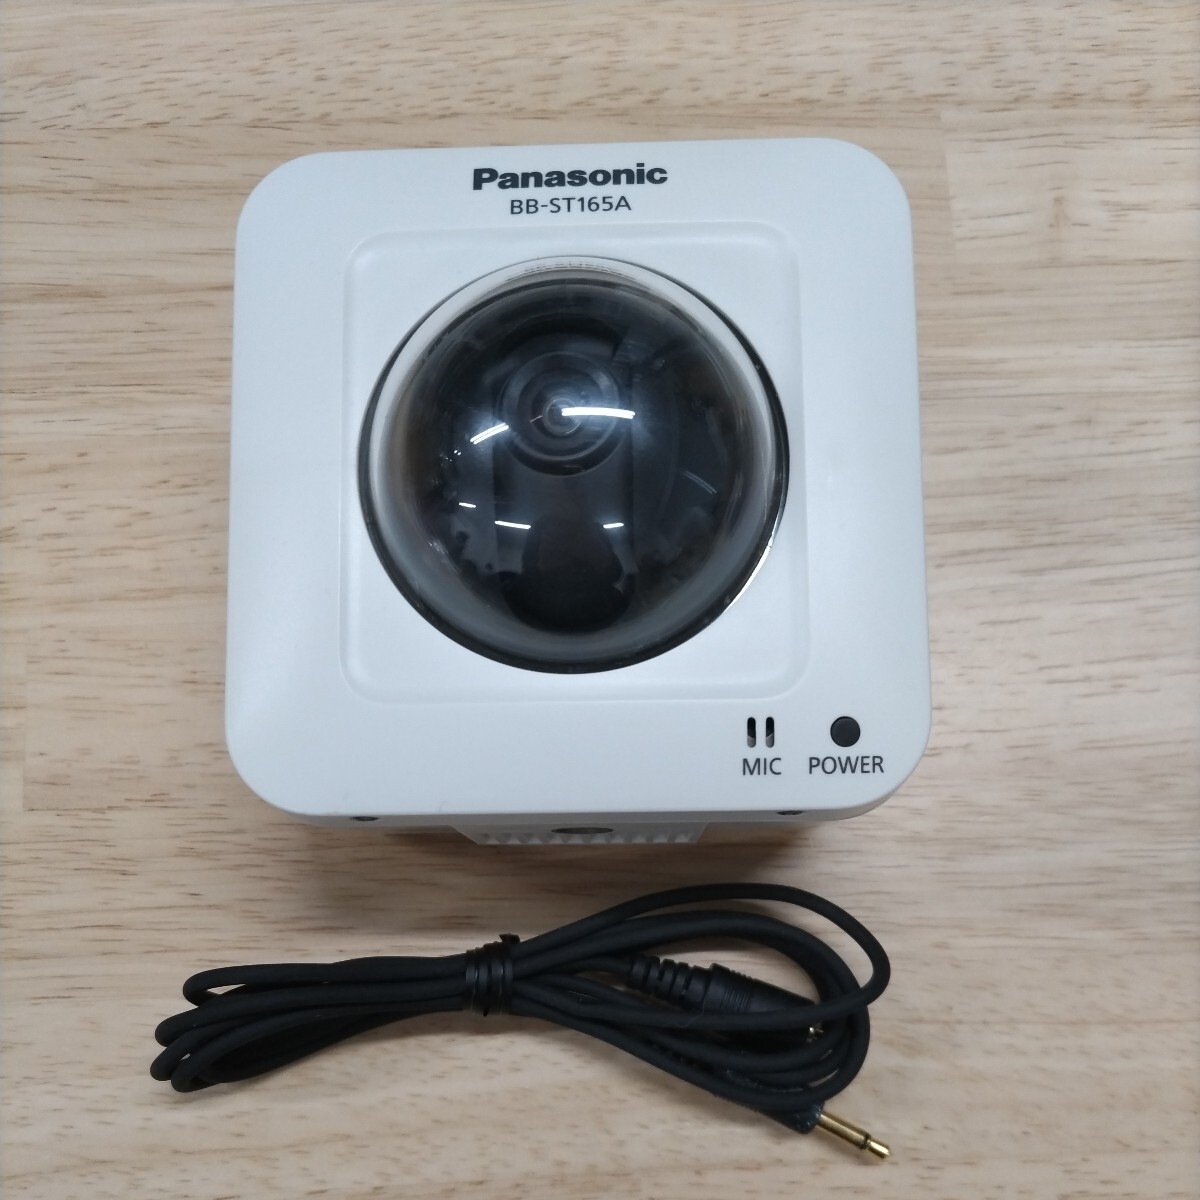 Panasonic HDボックス型ネットワークカメラ(屋内タイプ) BB-ST165Aの画像1